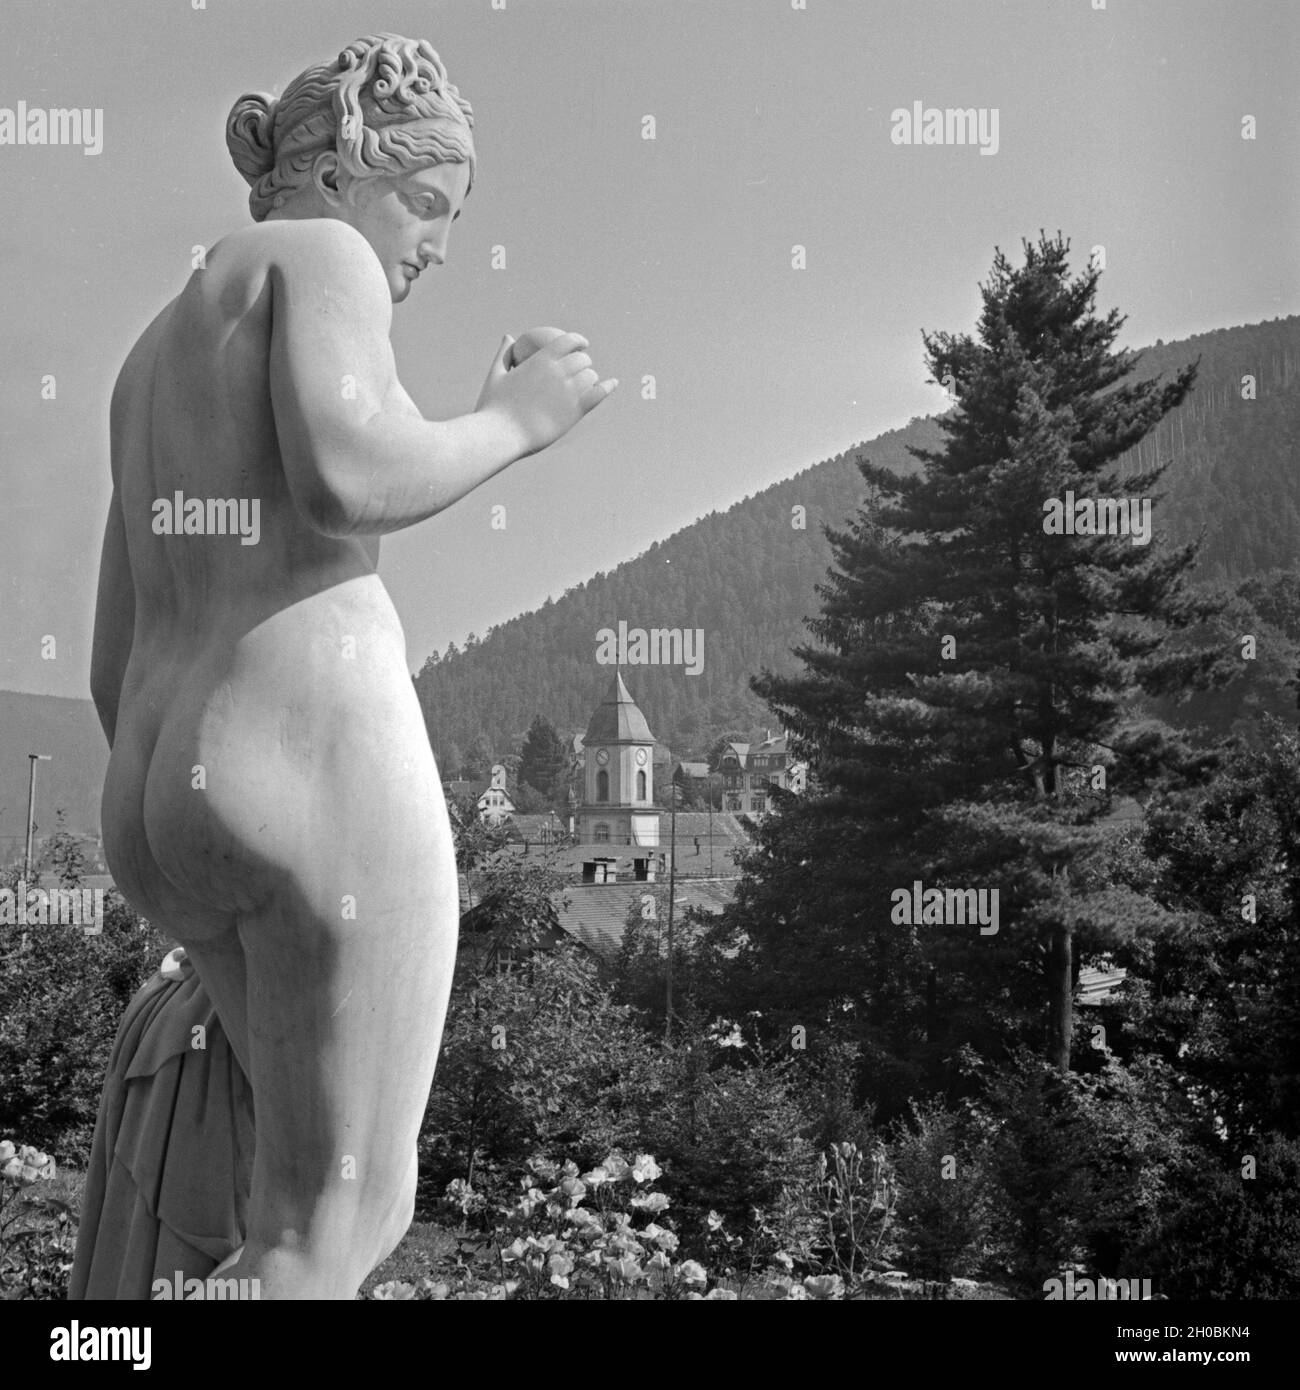 Frauenstatue vor der Stadtansicht von Wildbad im Schwarzwald, Deutschland 1930er Jahre. Sculpture of a female in front of the town of Wildbad in Black Forest, Germany 1930s. Stock Photo